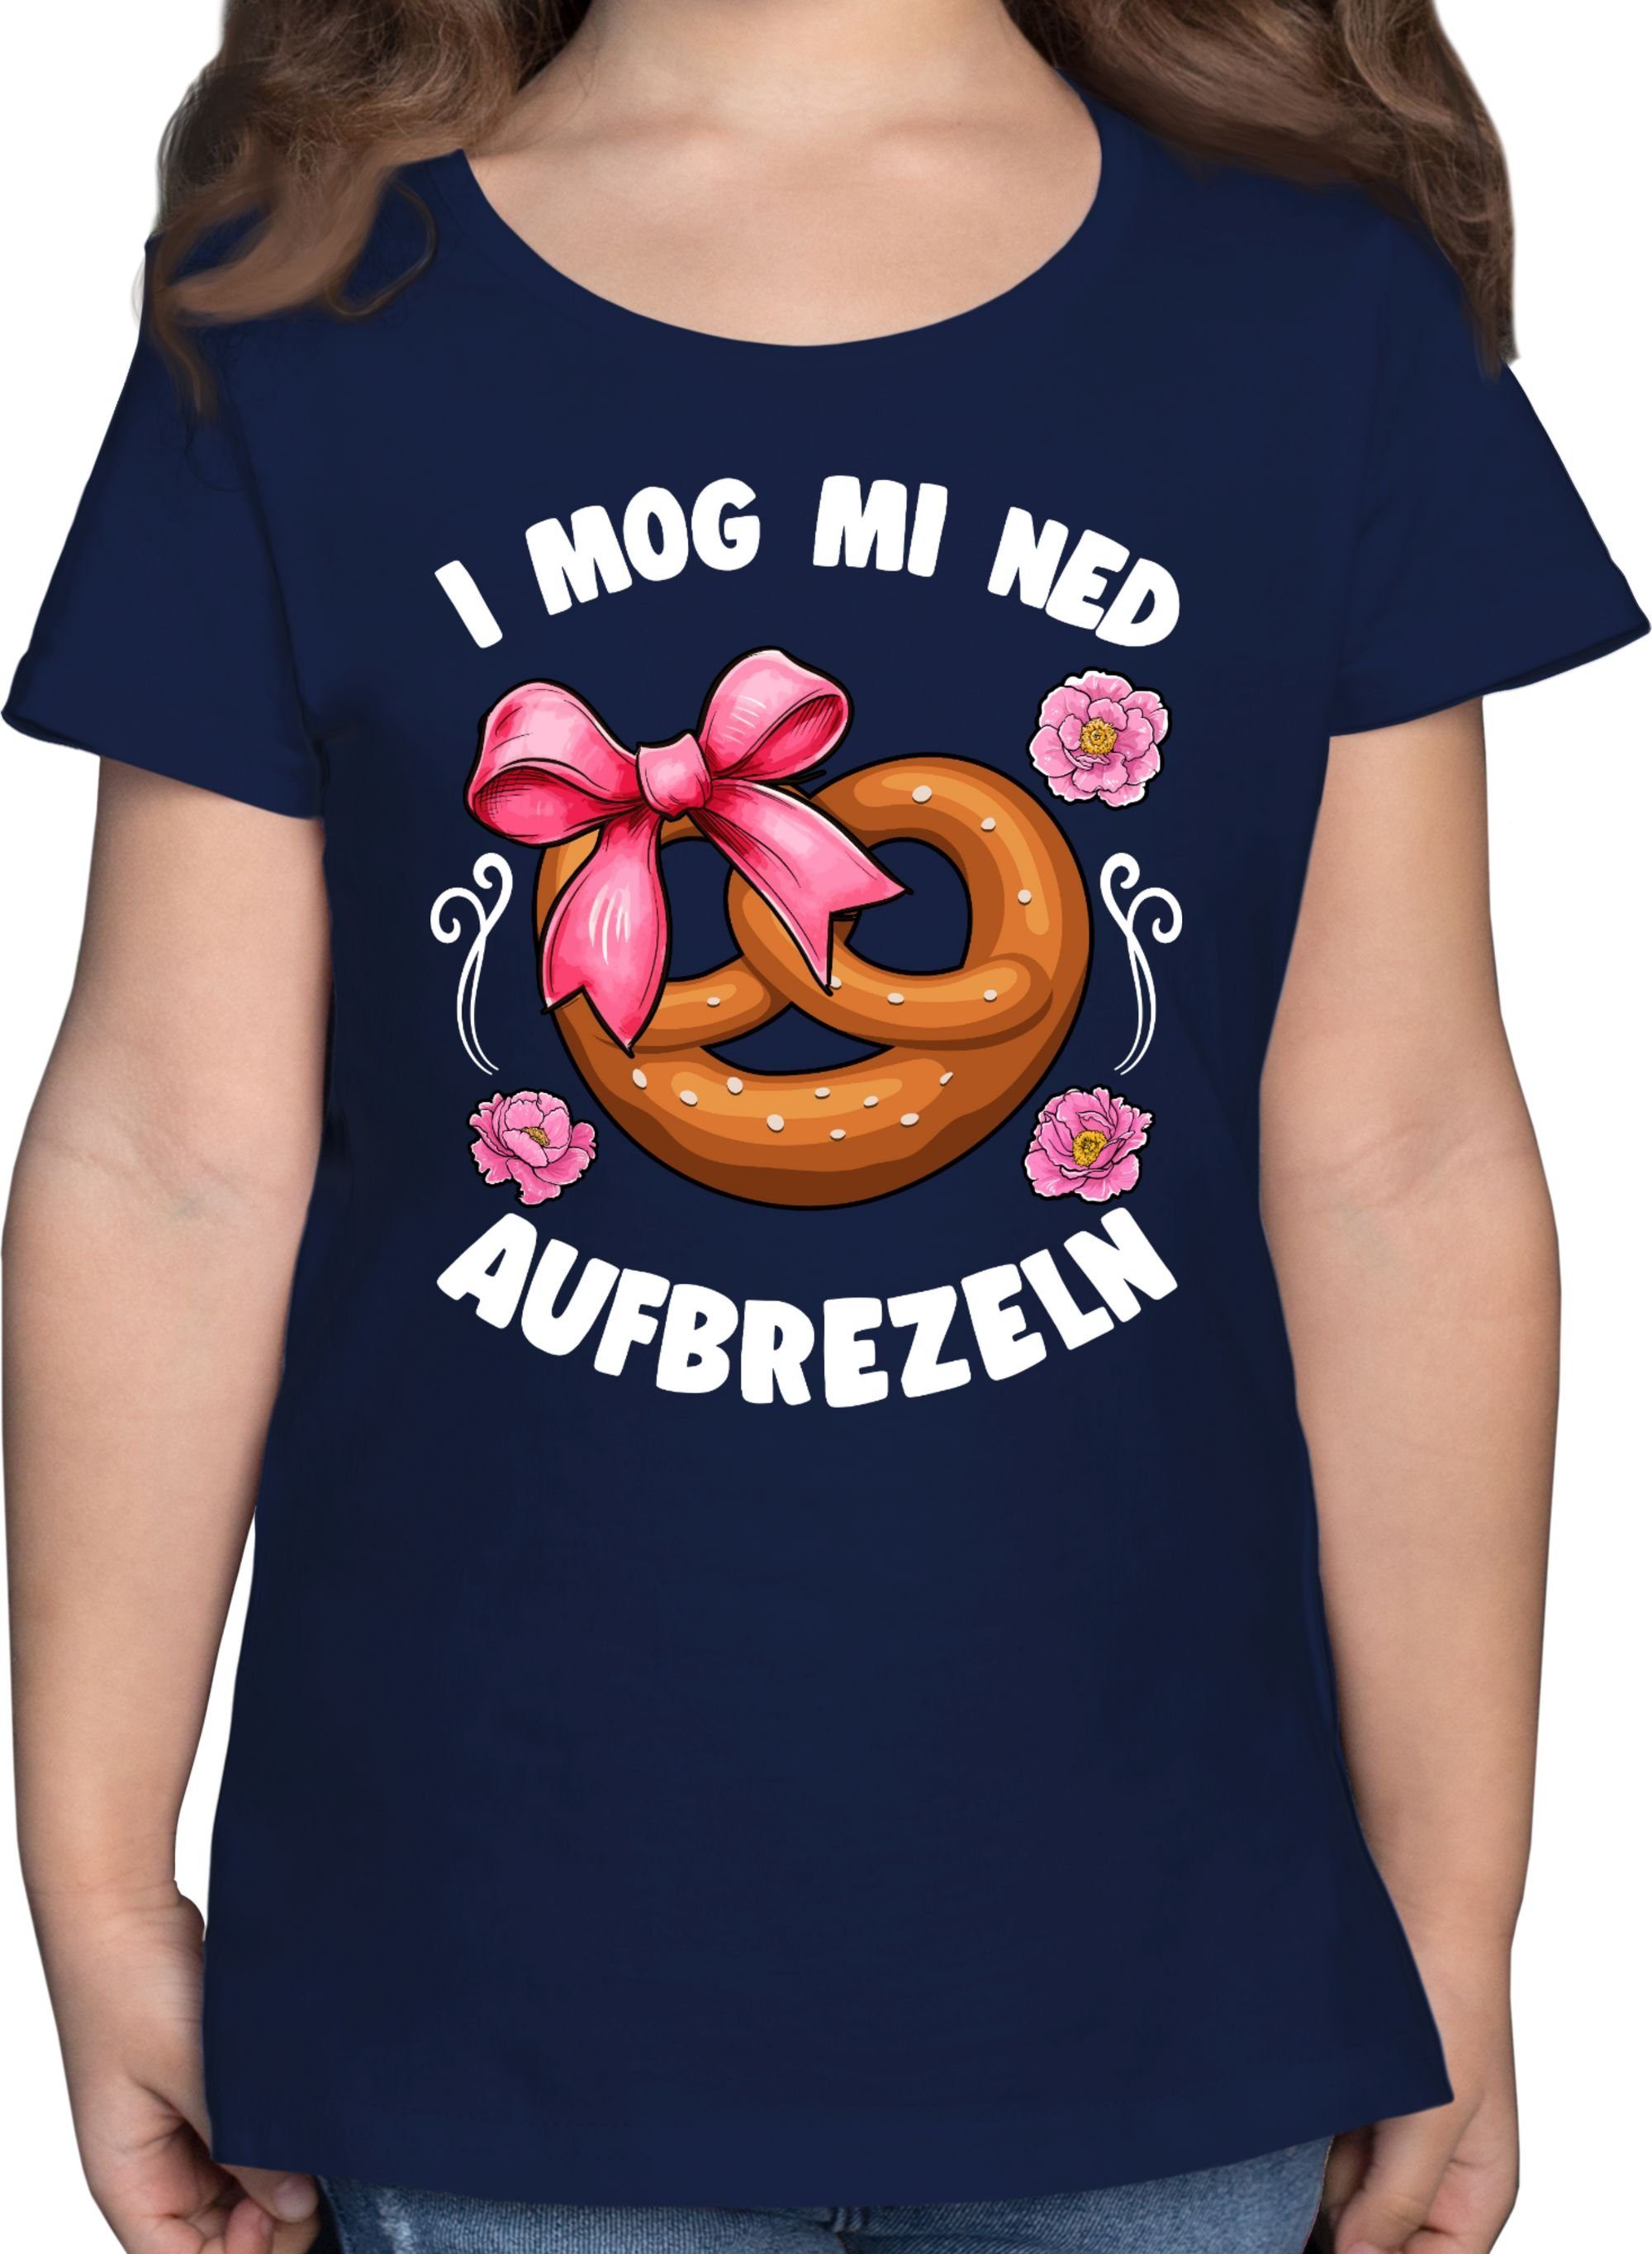 T-Shirt mog Oktoberfest mi aufbrezeln für ned Dunkelblau Outfit Mode I 3 Shirtracer Kinder